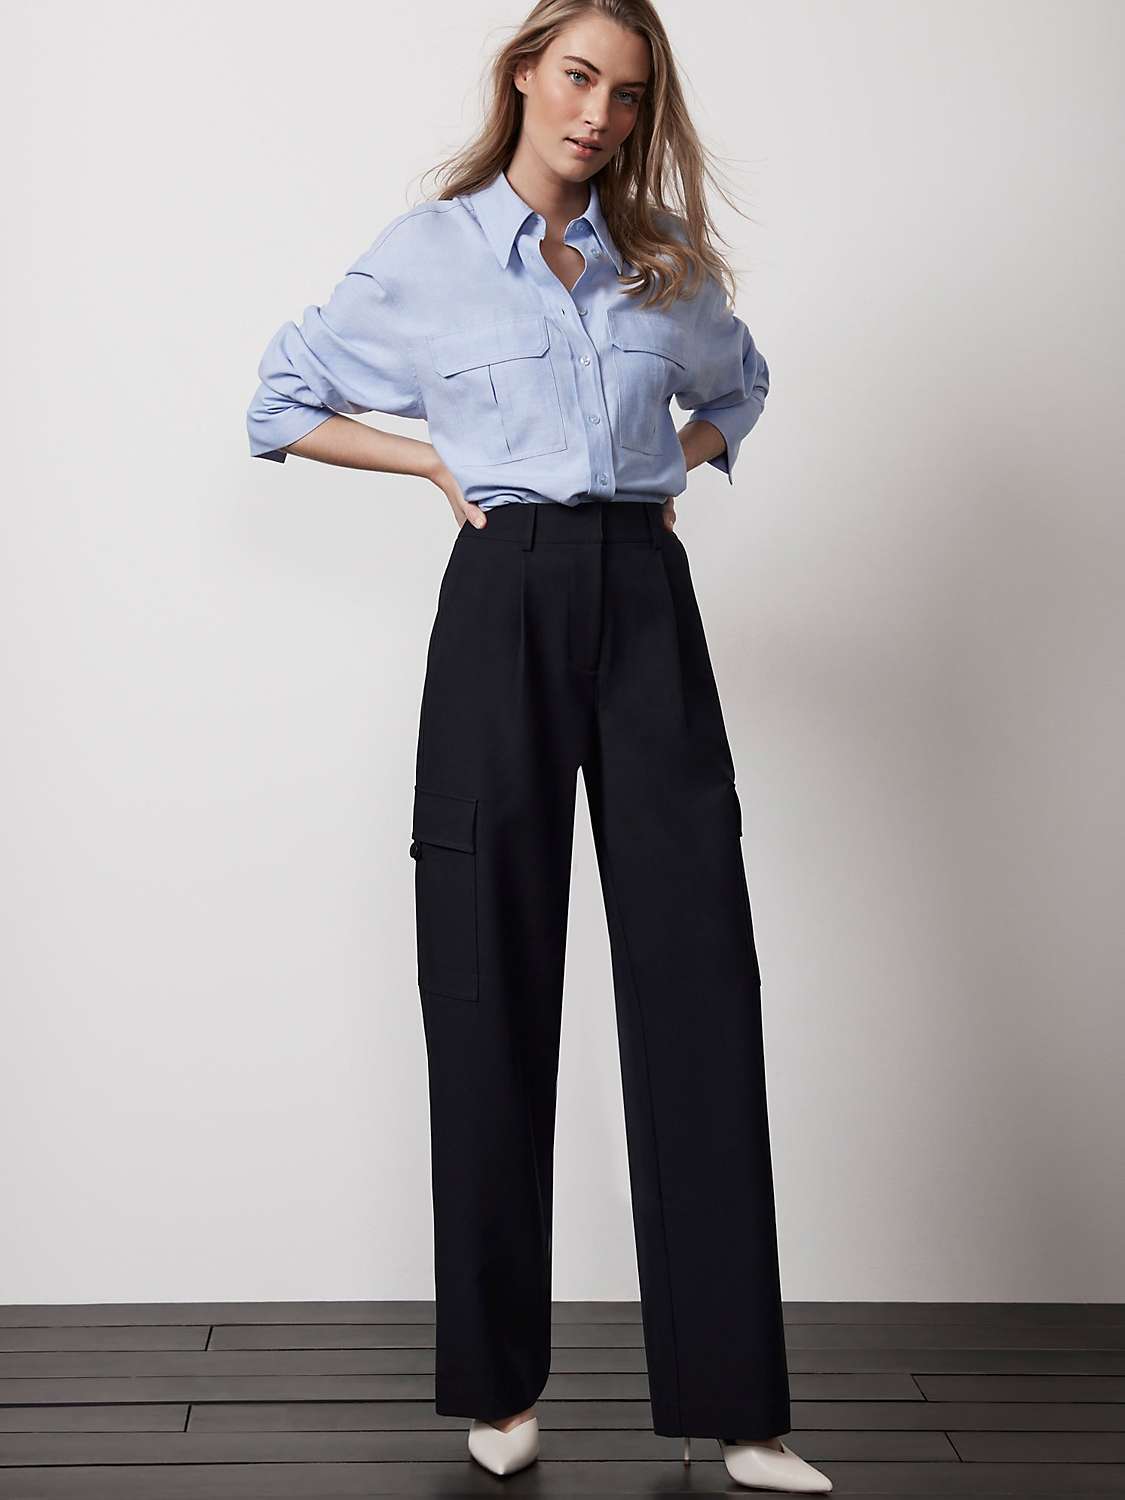 Buy Mint Velvet Tailored Cargo Trousers, Navy Online at johnlewis.com